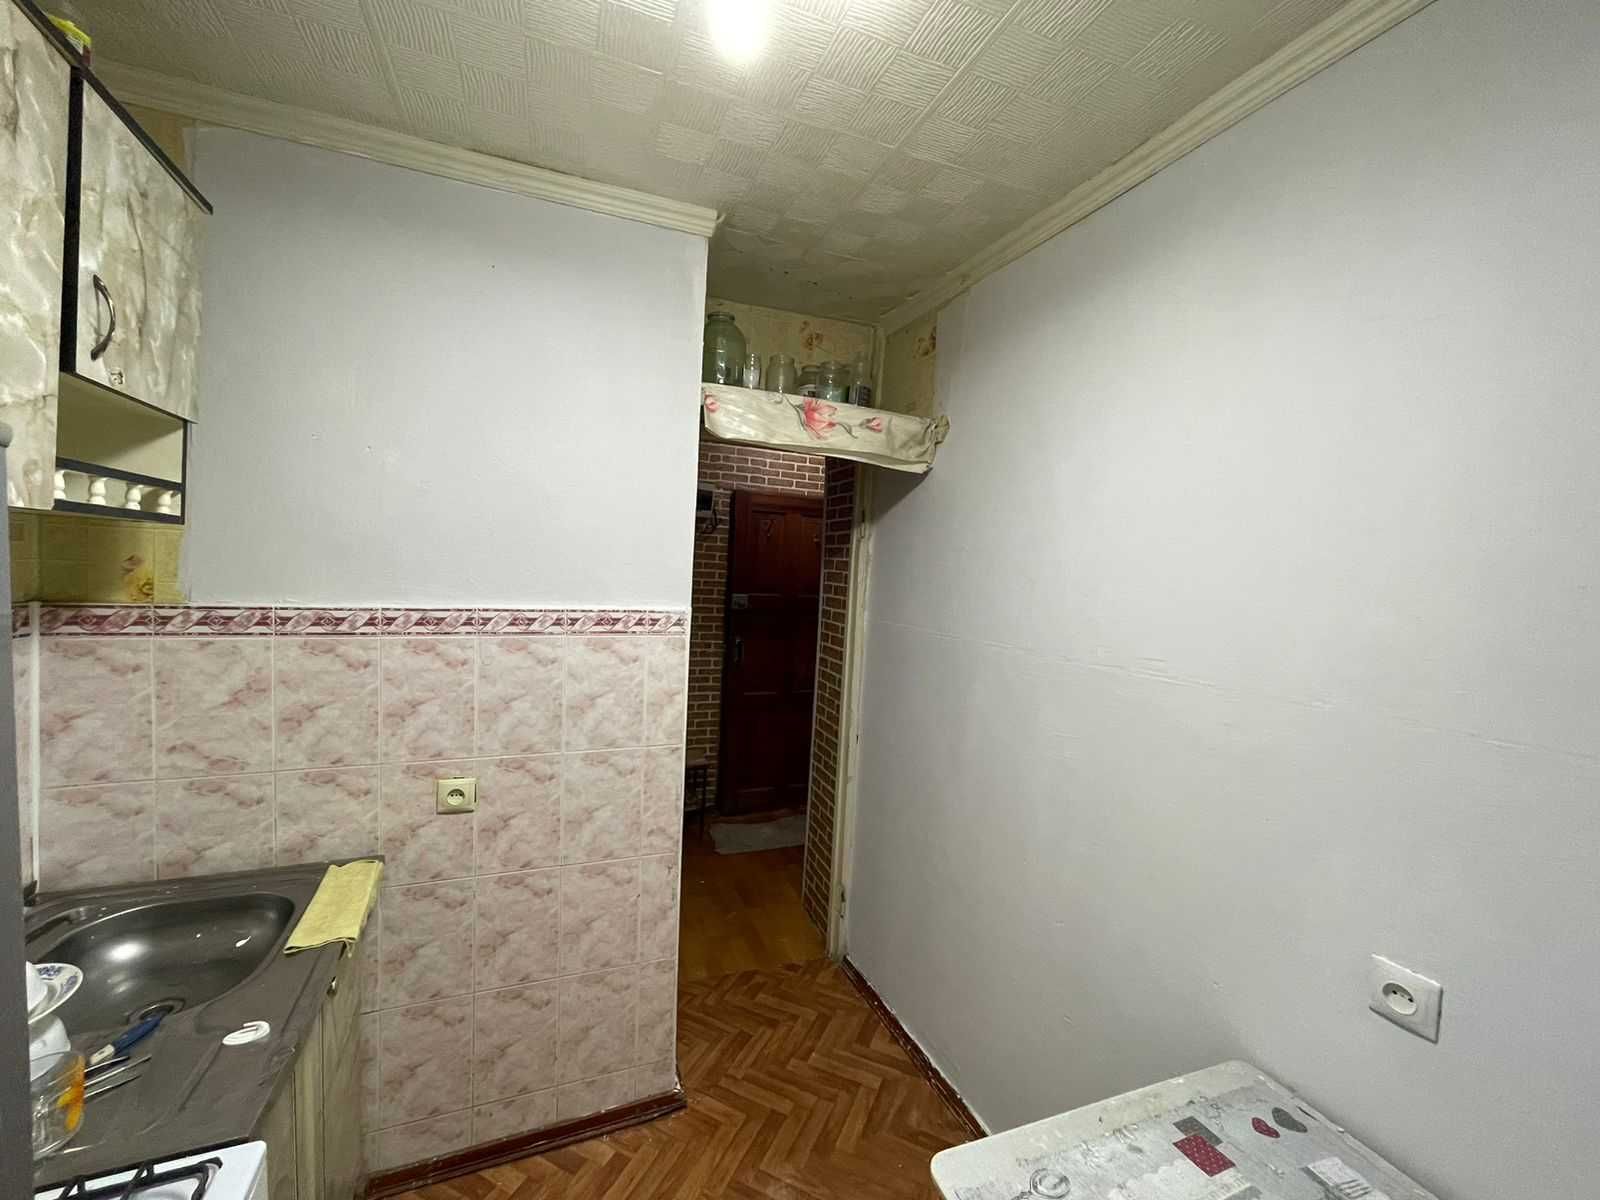 Продам МСО 1-комнатную квартиру после модернизации в 2019 году.